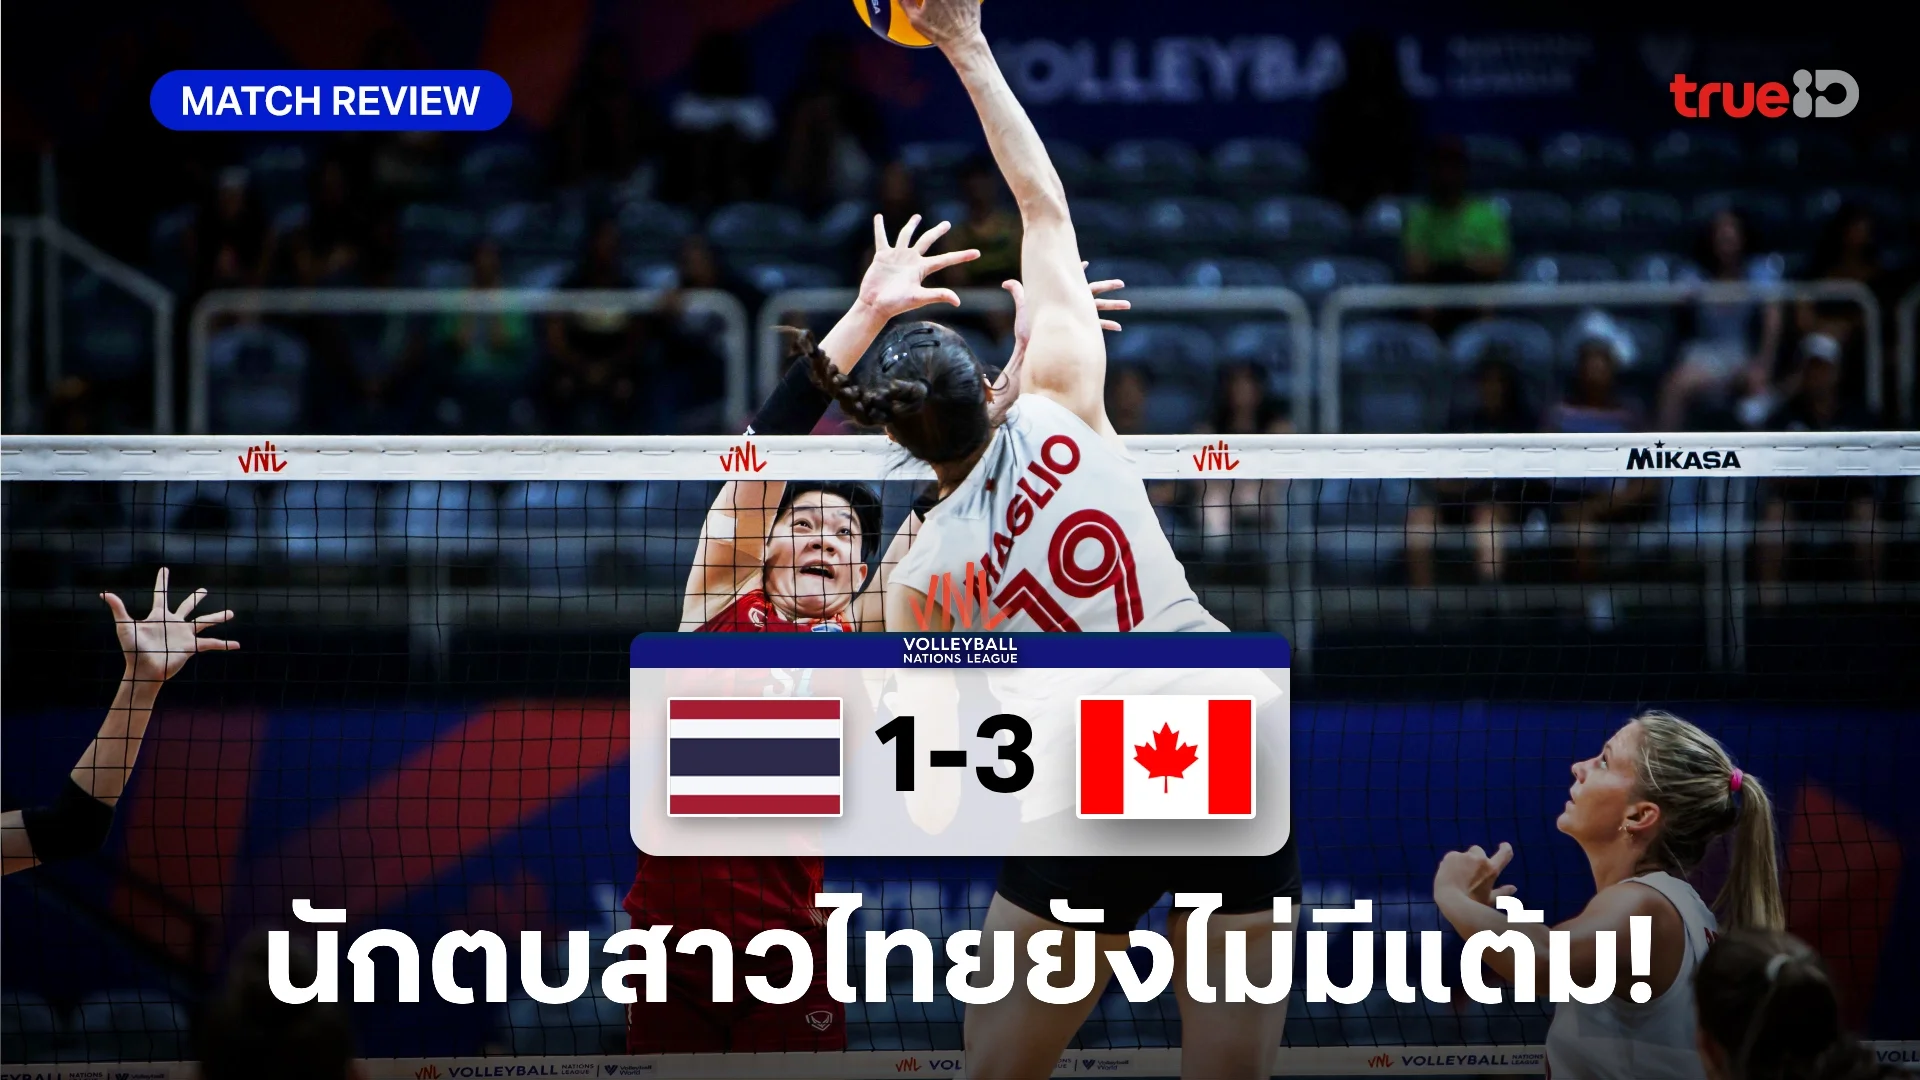 เต็มที่แล้ว! วอลเลย์บอลหญิงไทย แพ้ แคนาดา 1-3 เซต ศึก VNL นัดสาม